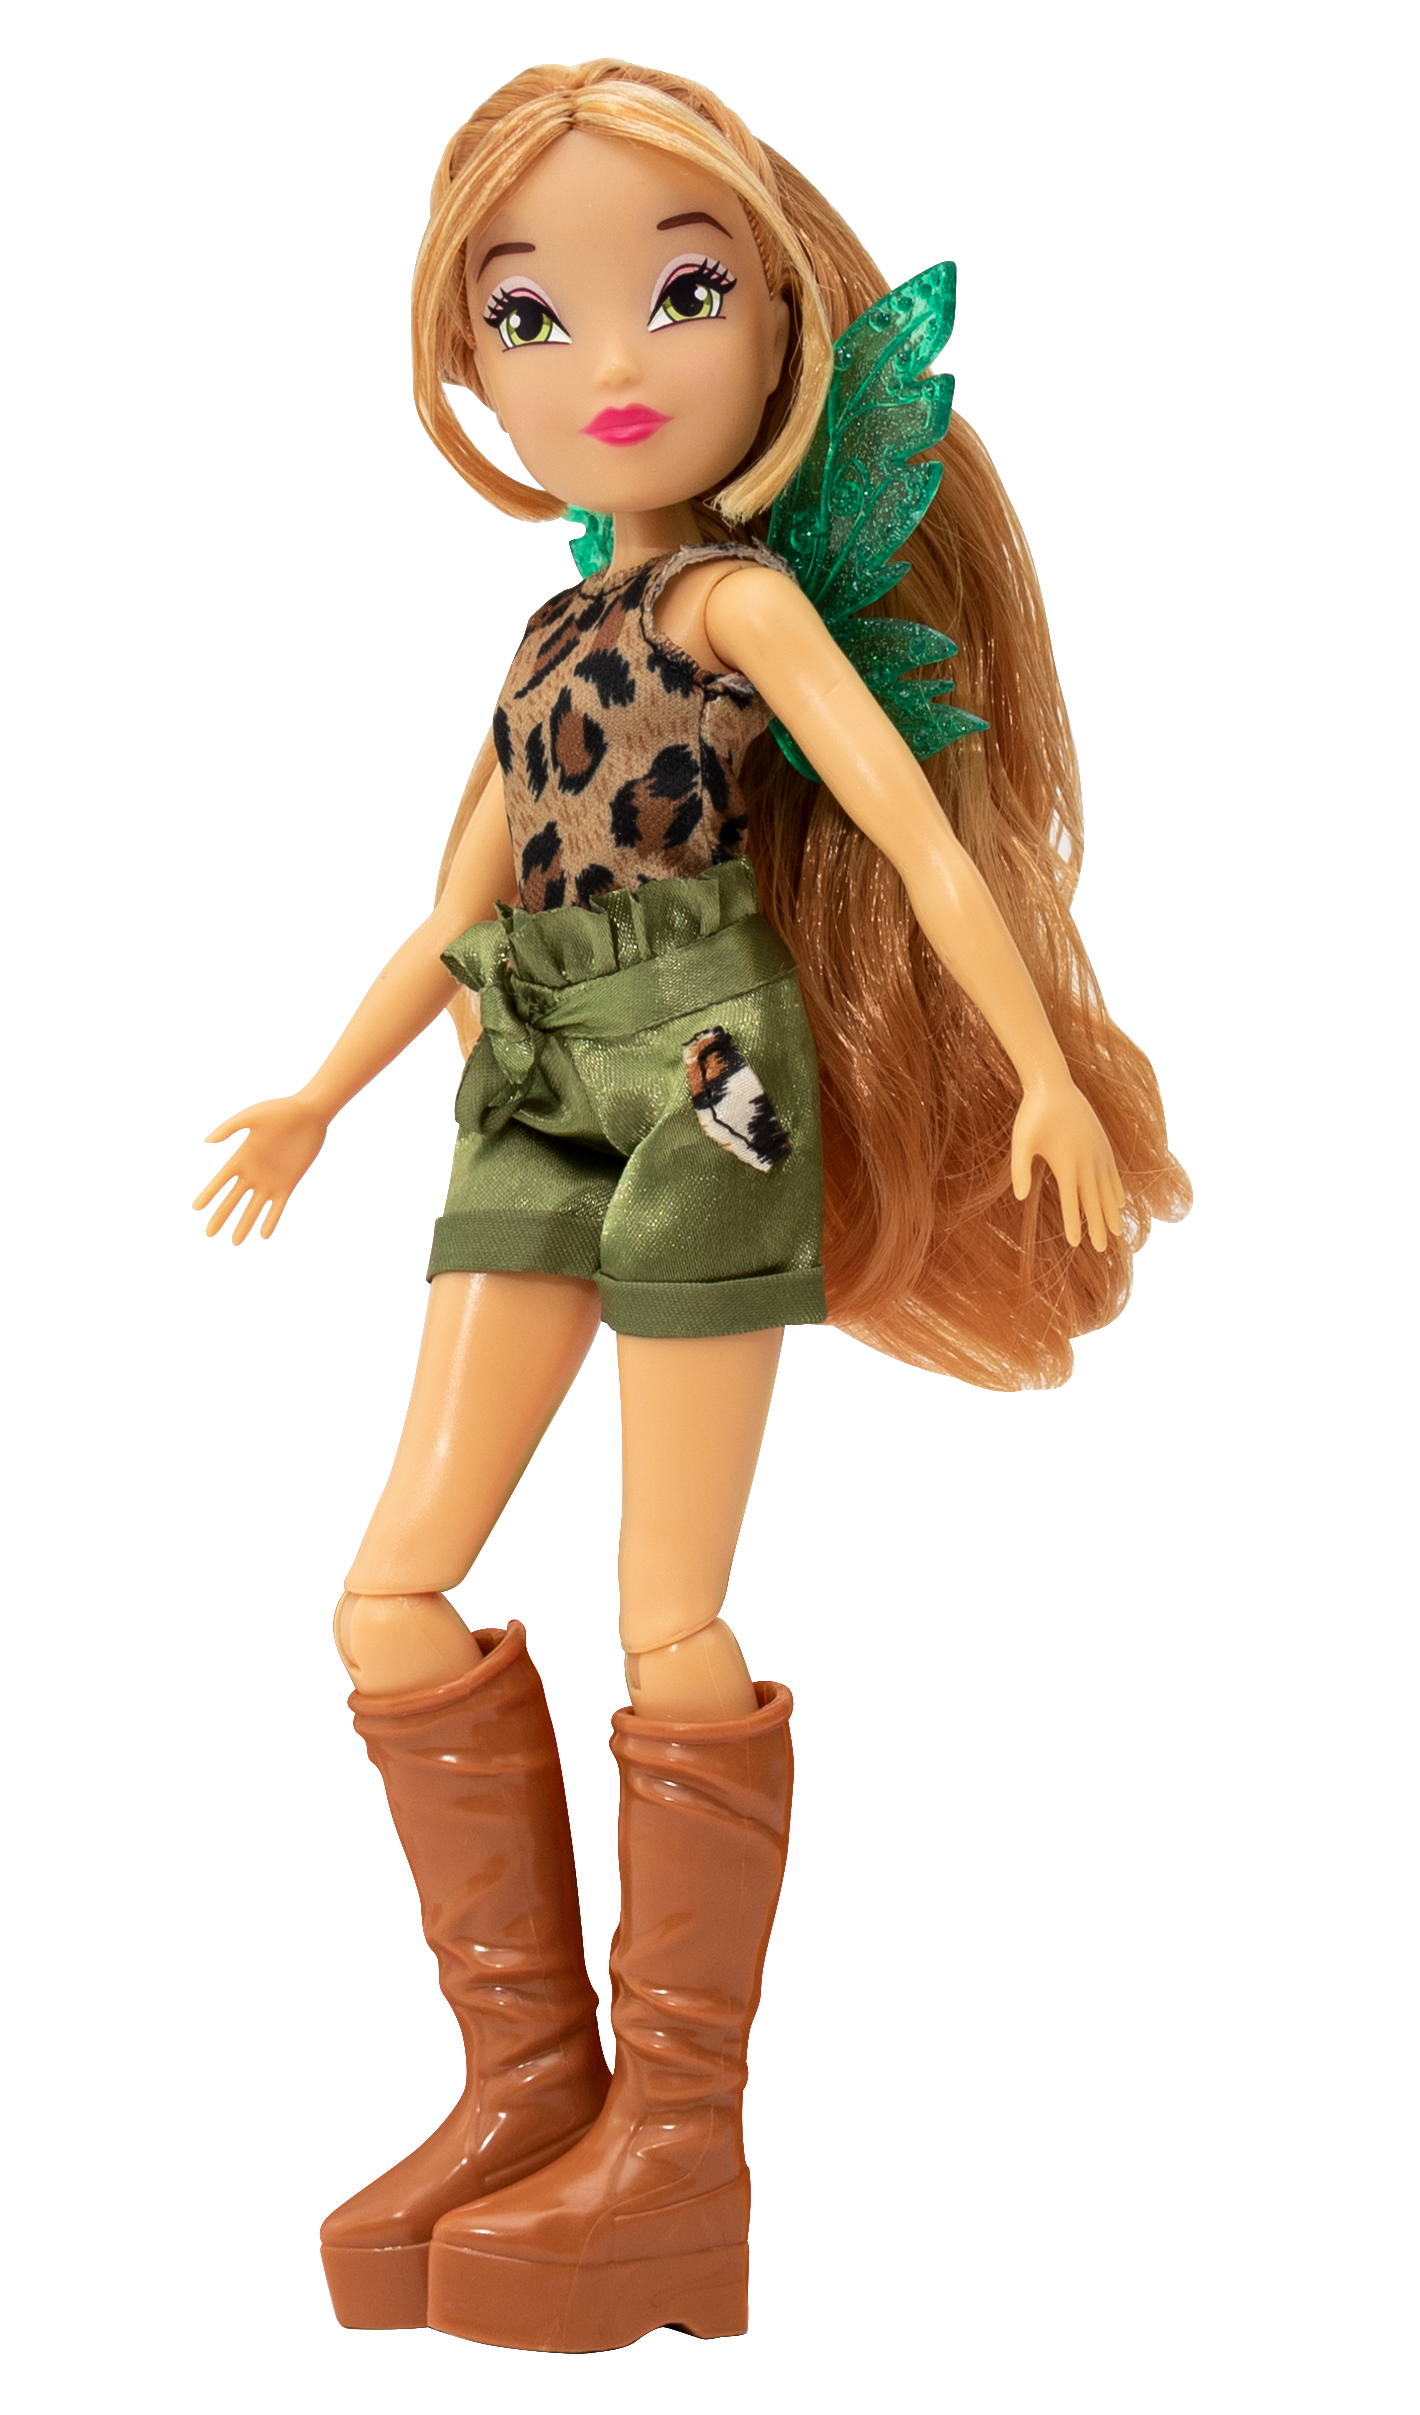 Winx doll - bambola fashion doll personaggio flora alta cm 23 - WINX